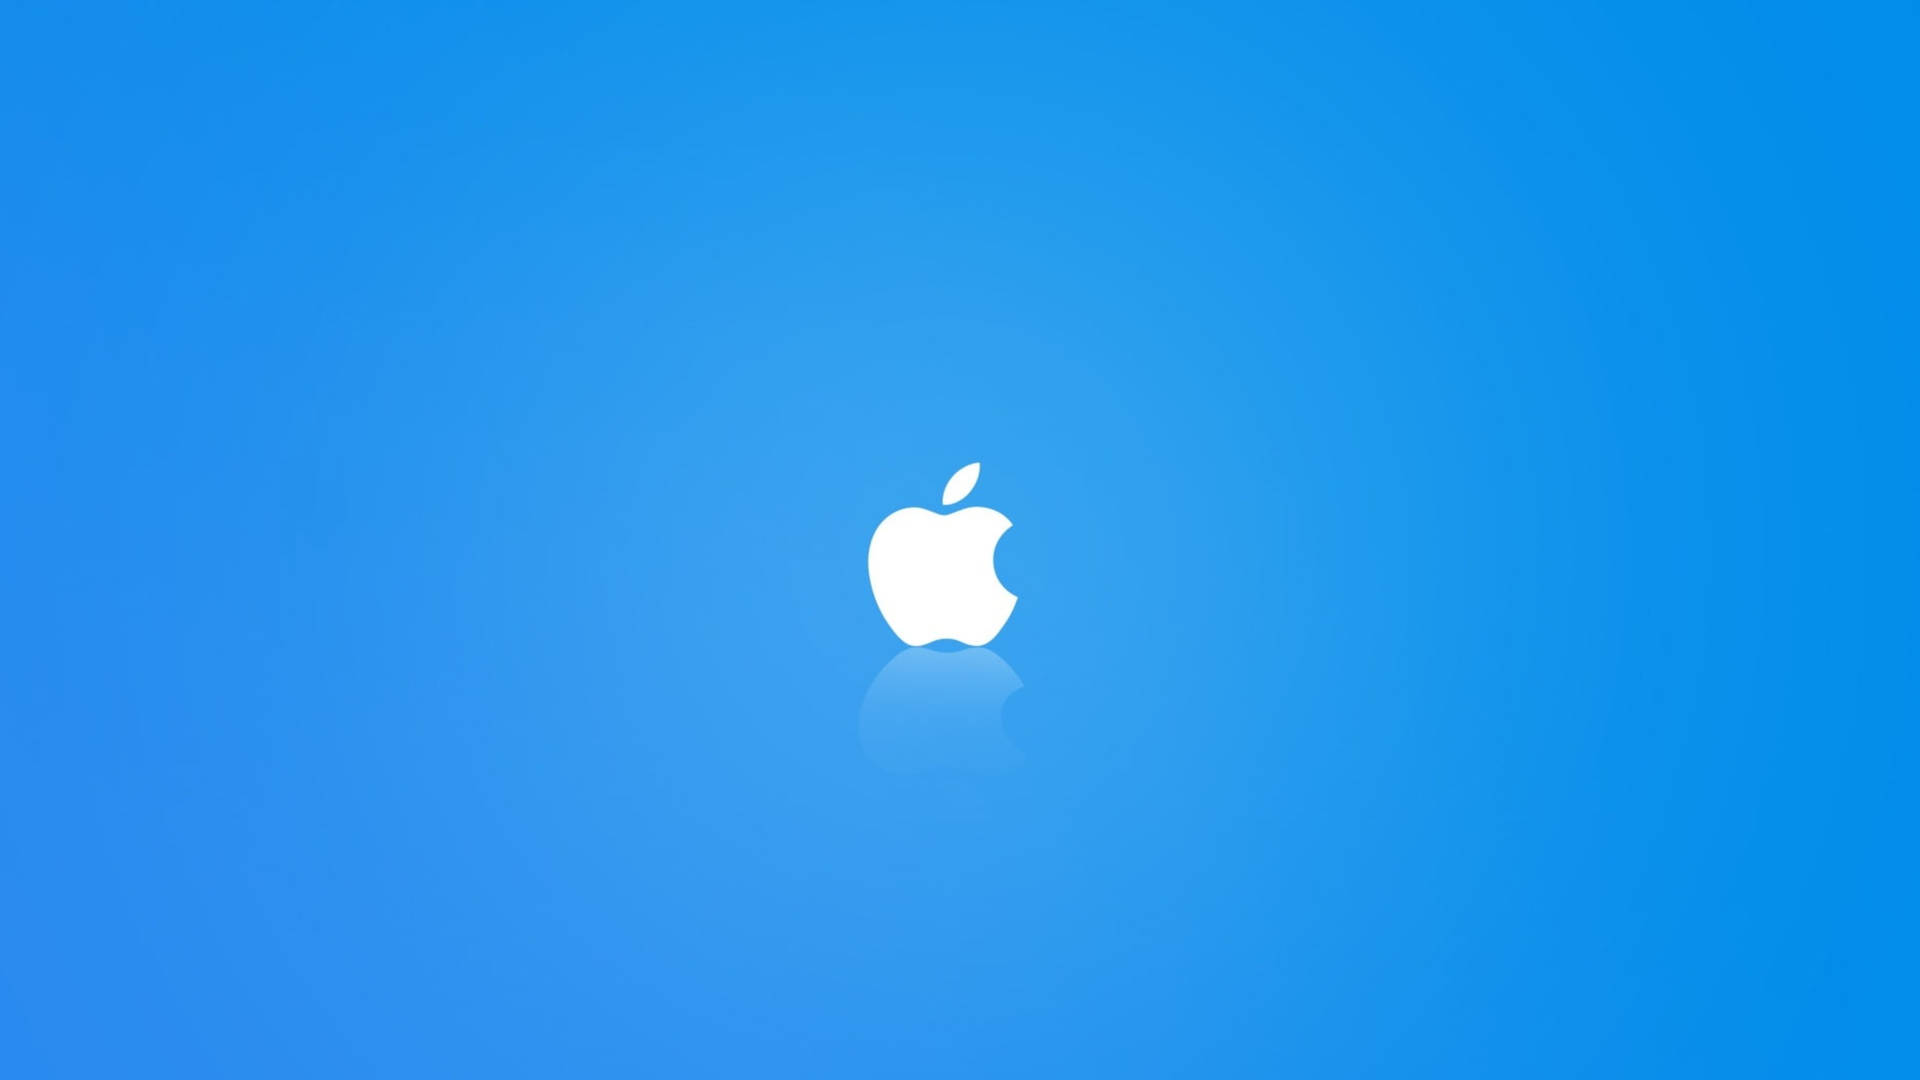 Apple 4k Ultra Hd Blue Background